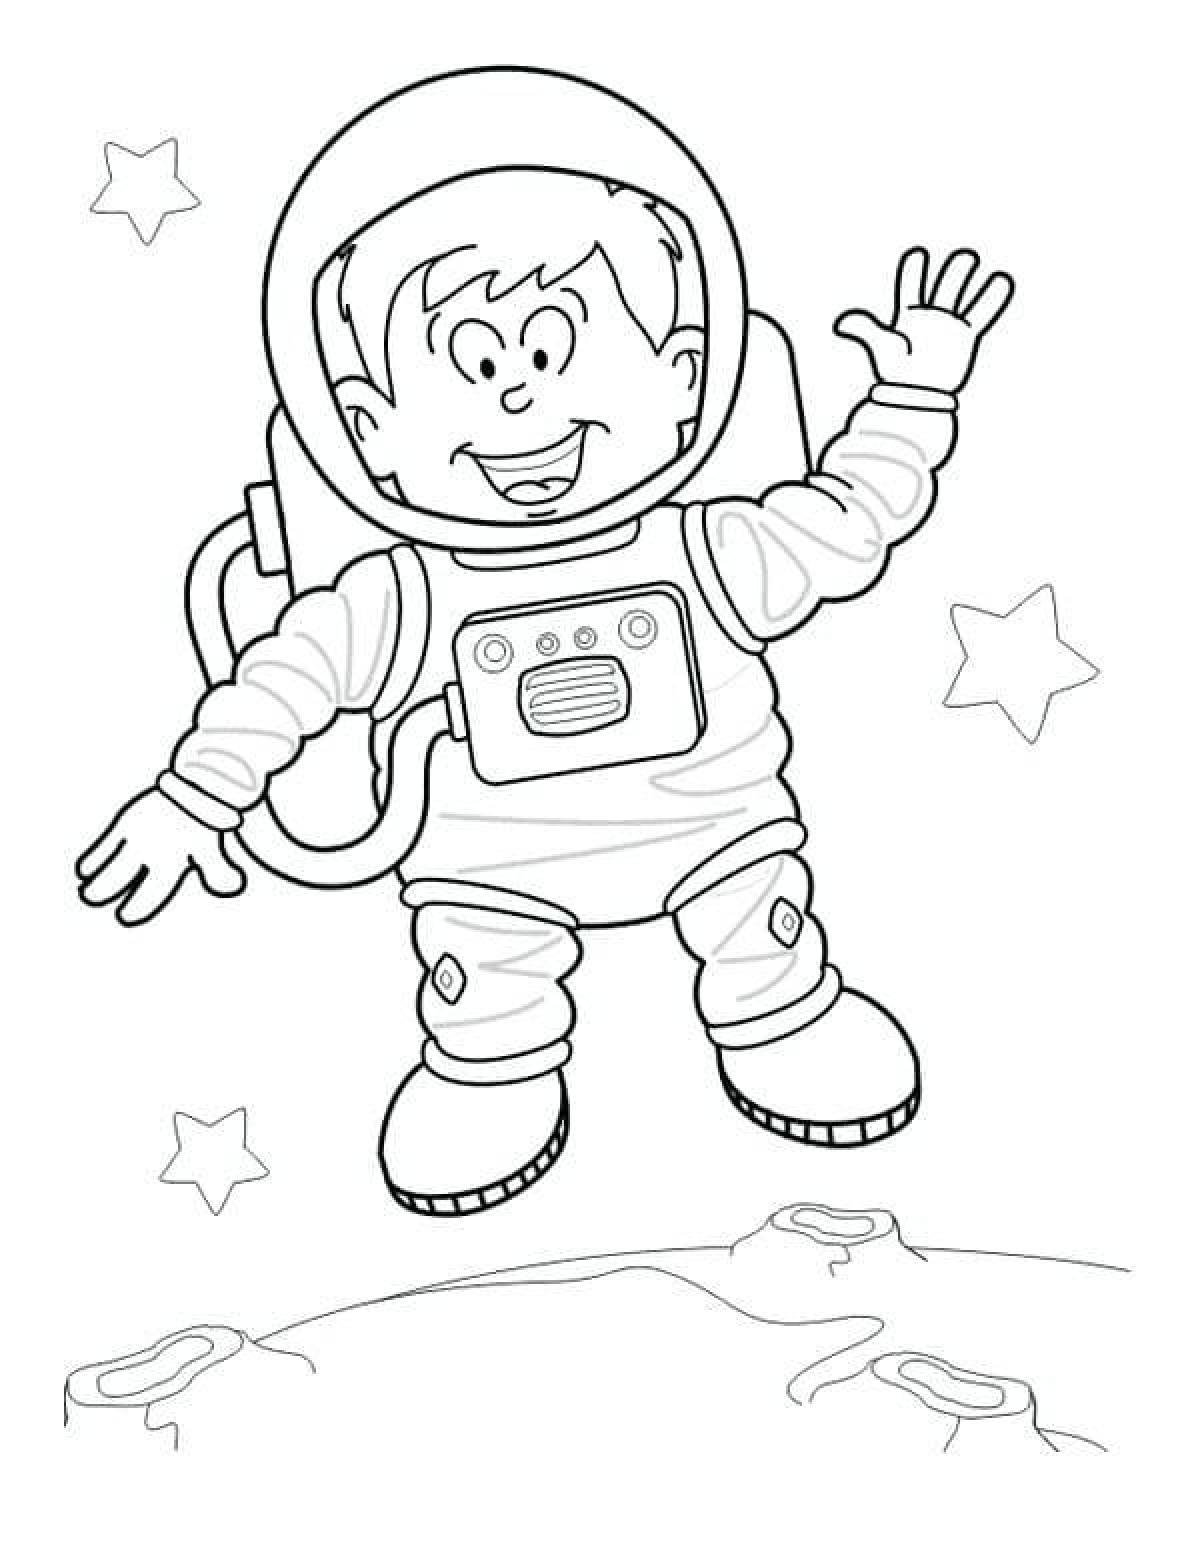 Космонавт шаблон для вырезания распечатать. Космонавт раскраска. Раскраска для малышей. Космос. Раскраска. В космосе. Космонавт раскраска для детей.